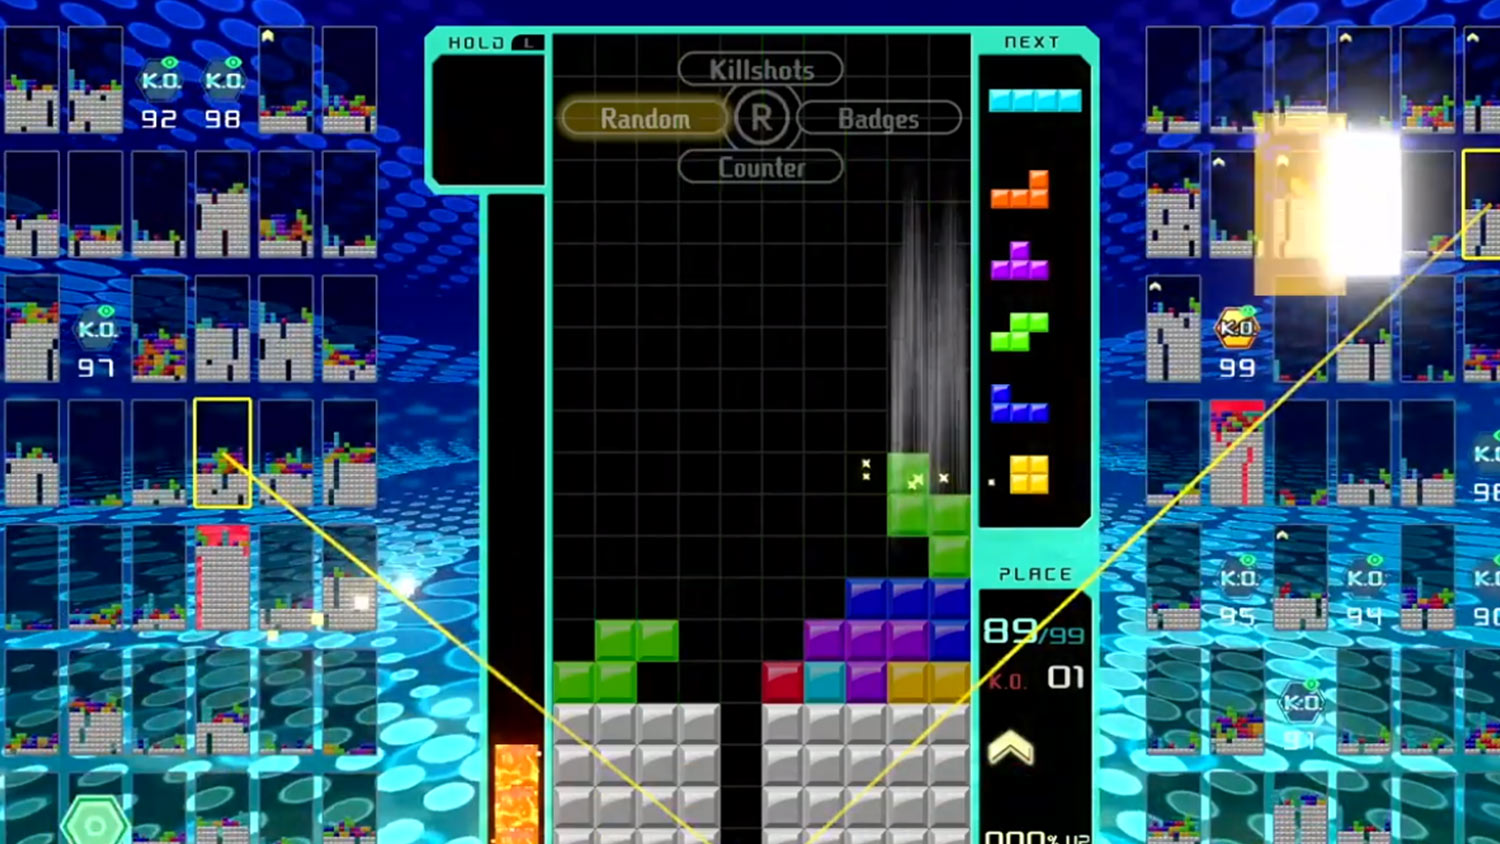 Tetris 99 Recibira Pronto Nuevos Modos De Juego Segun Rumores Hobbyconsolas Juegos